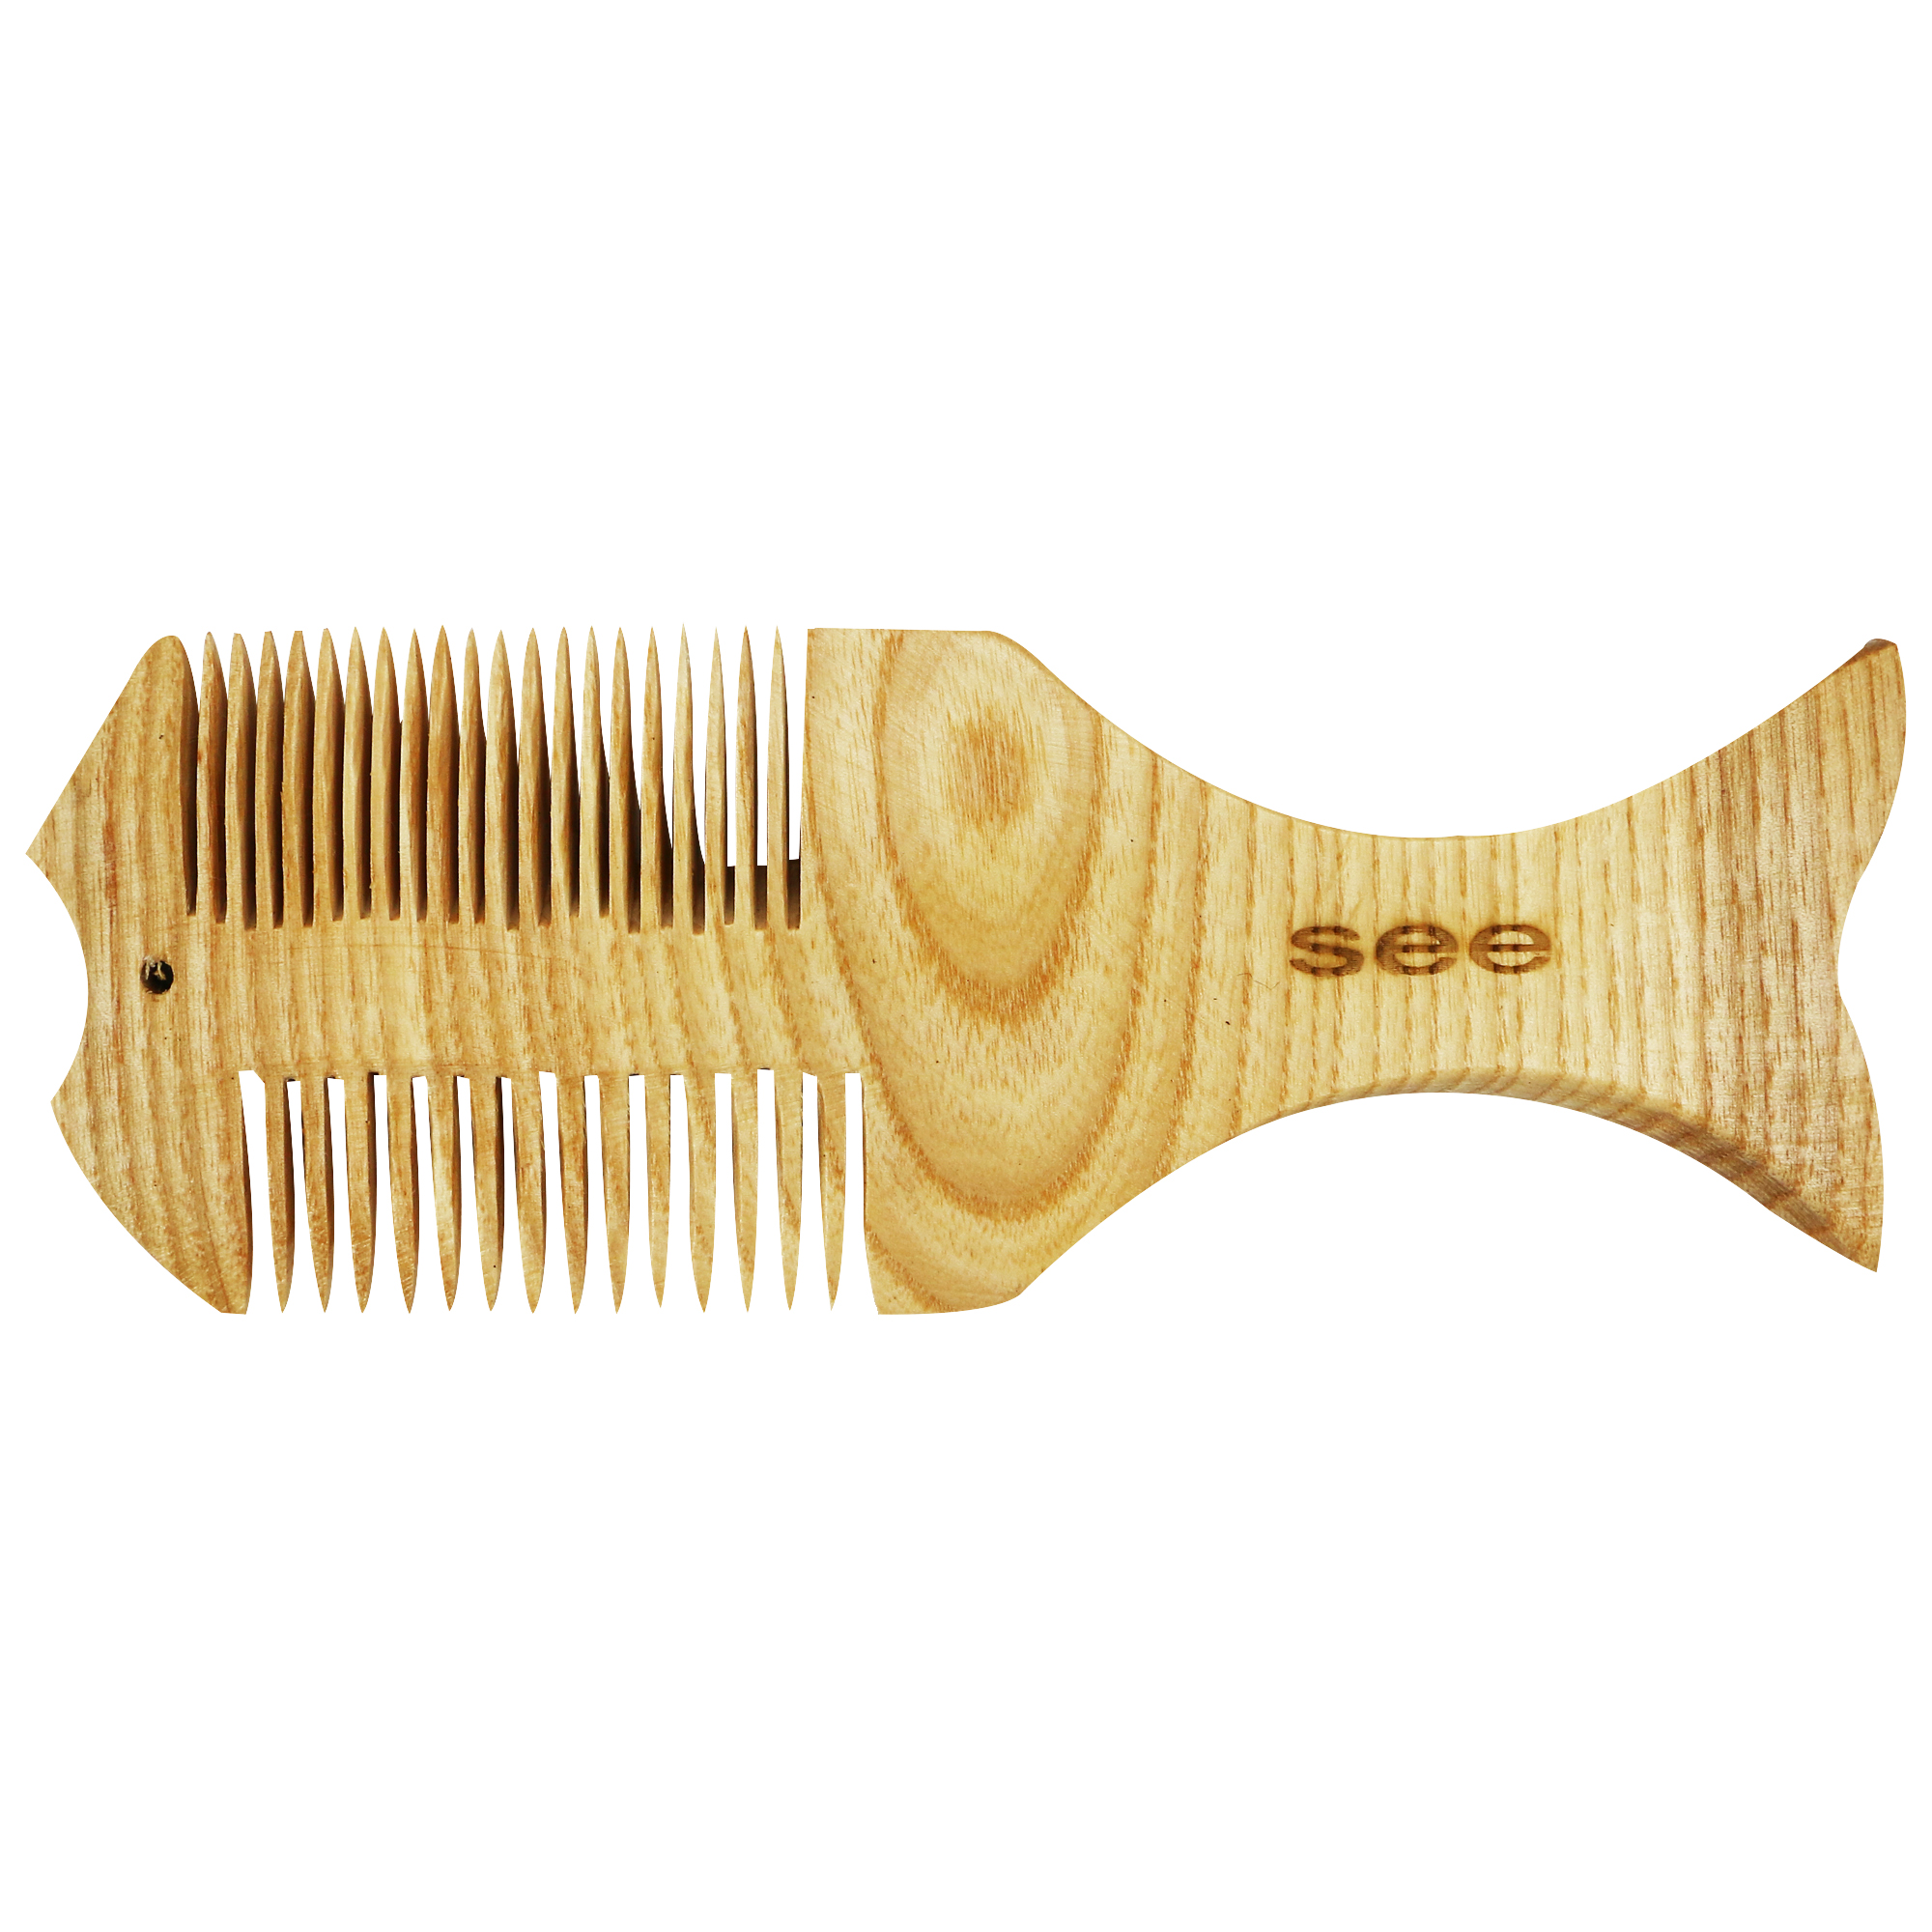 شانه چوبی مو سی مدل ماهی کد 1703